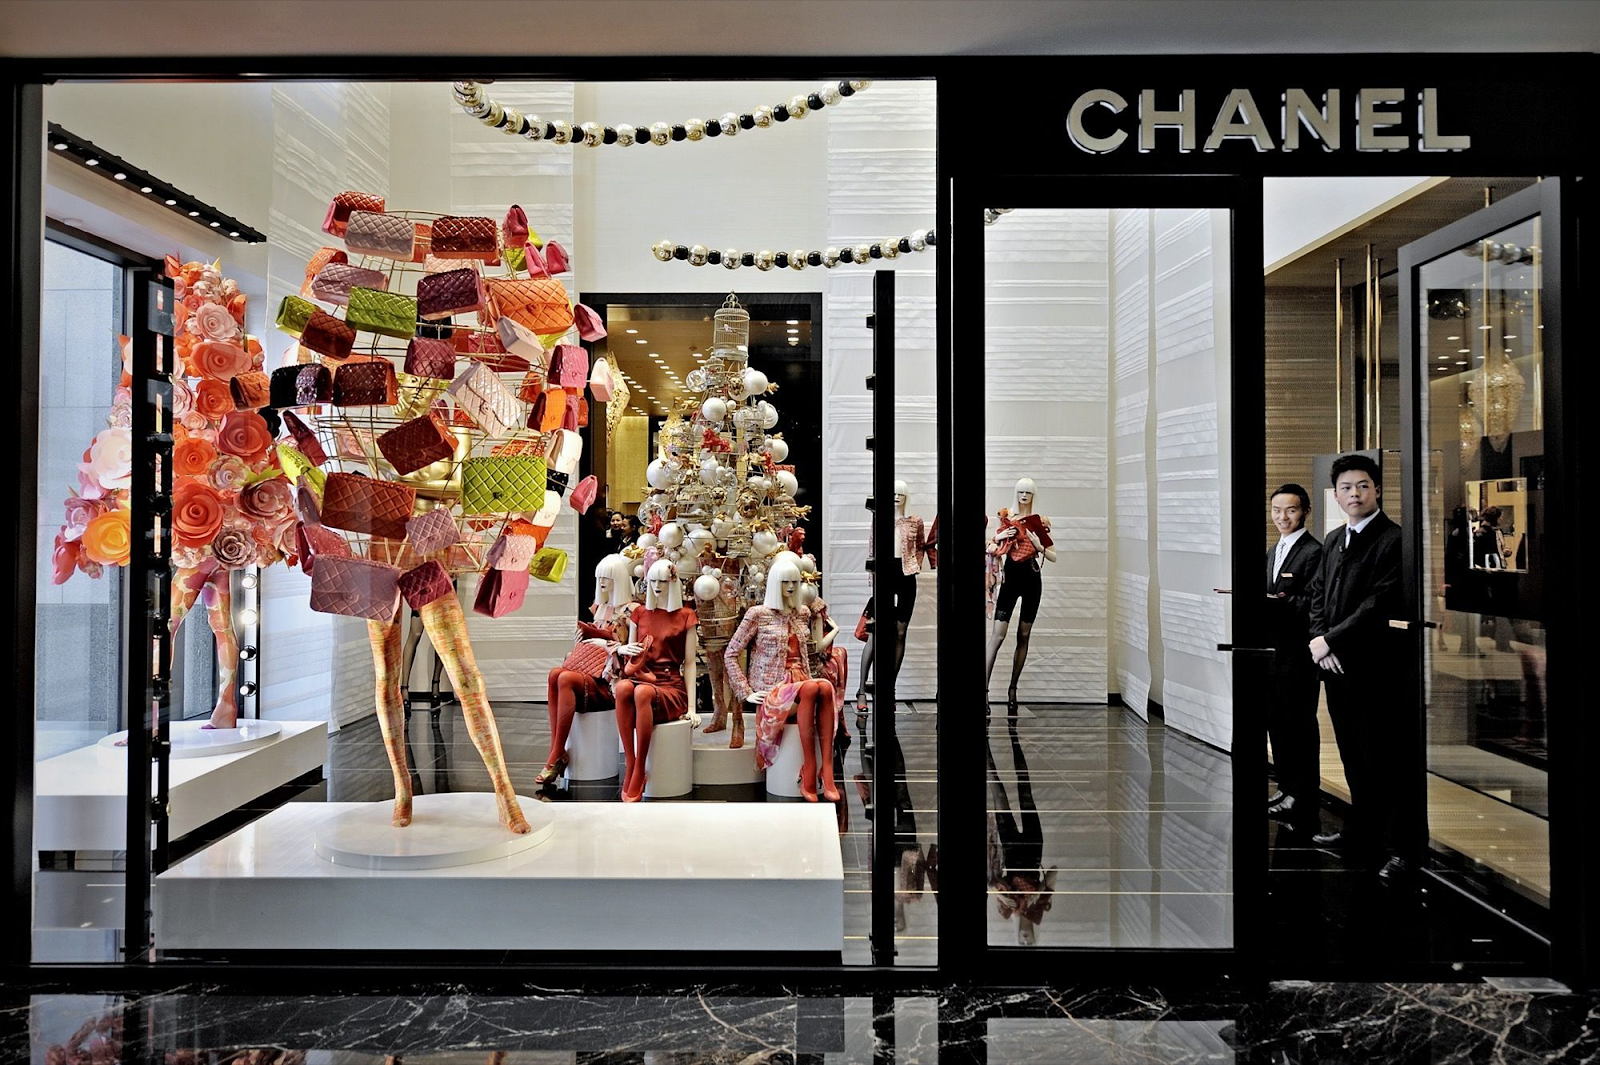 Thương hiệu Chanel nổi tiếng với những thiết kế cách tân vượt qua bó buộc người phụ nữ